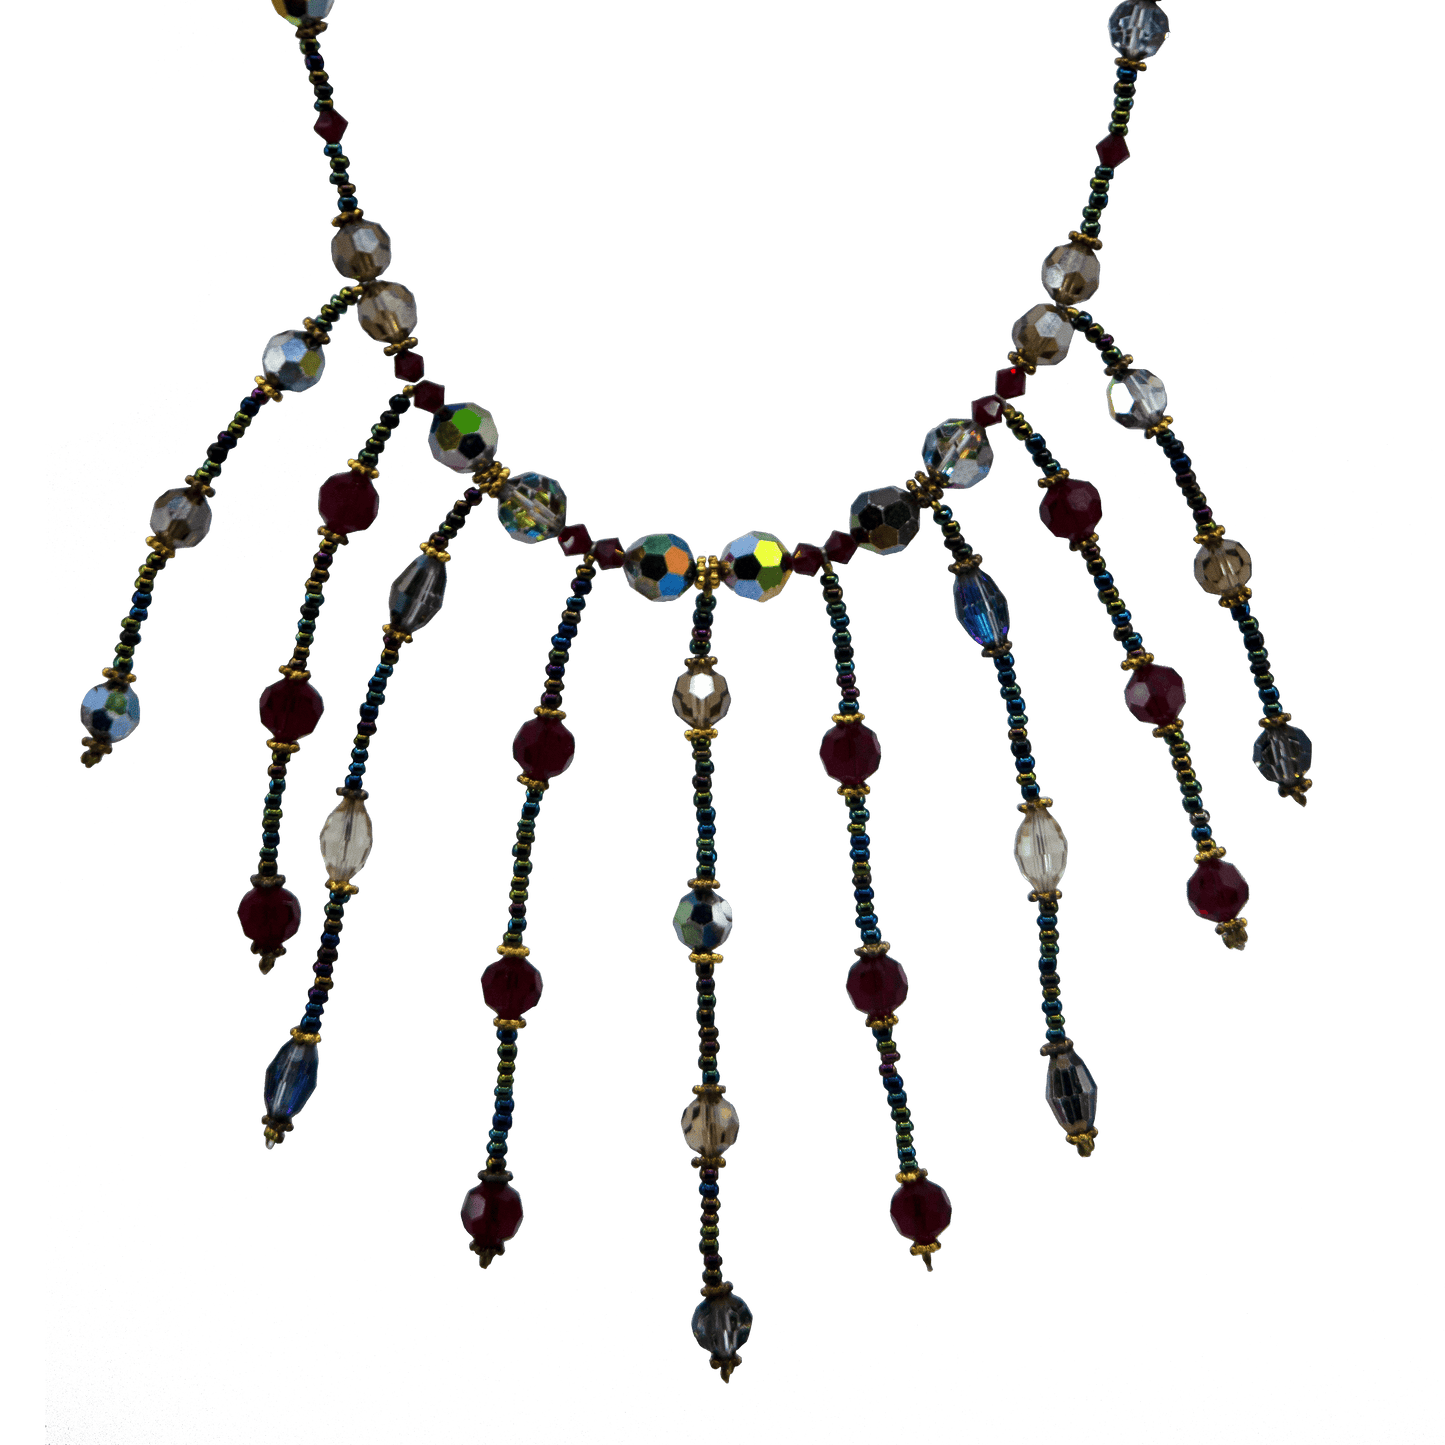 Black Magic Necklace